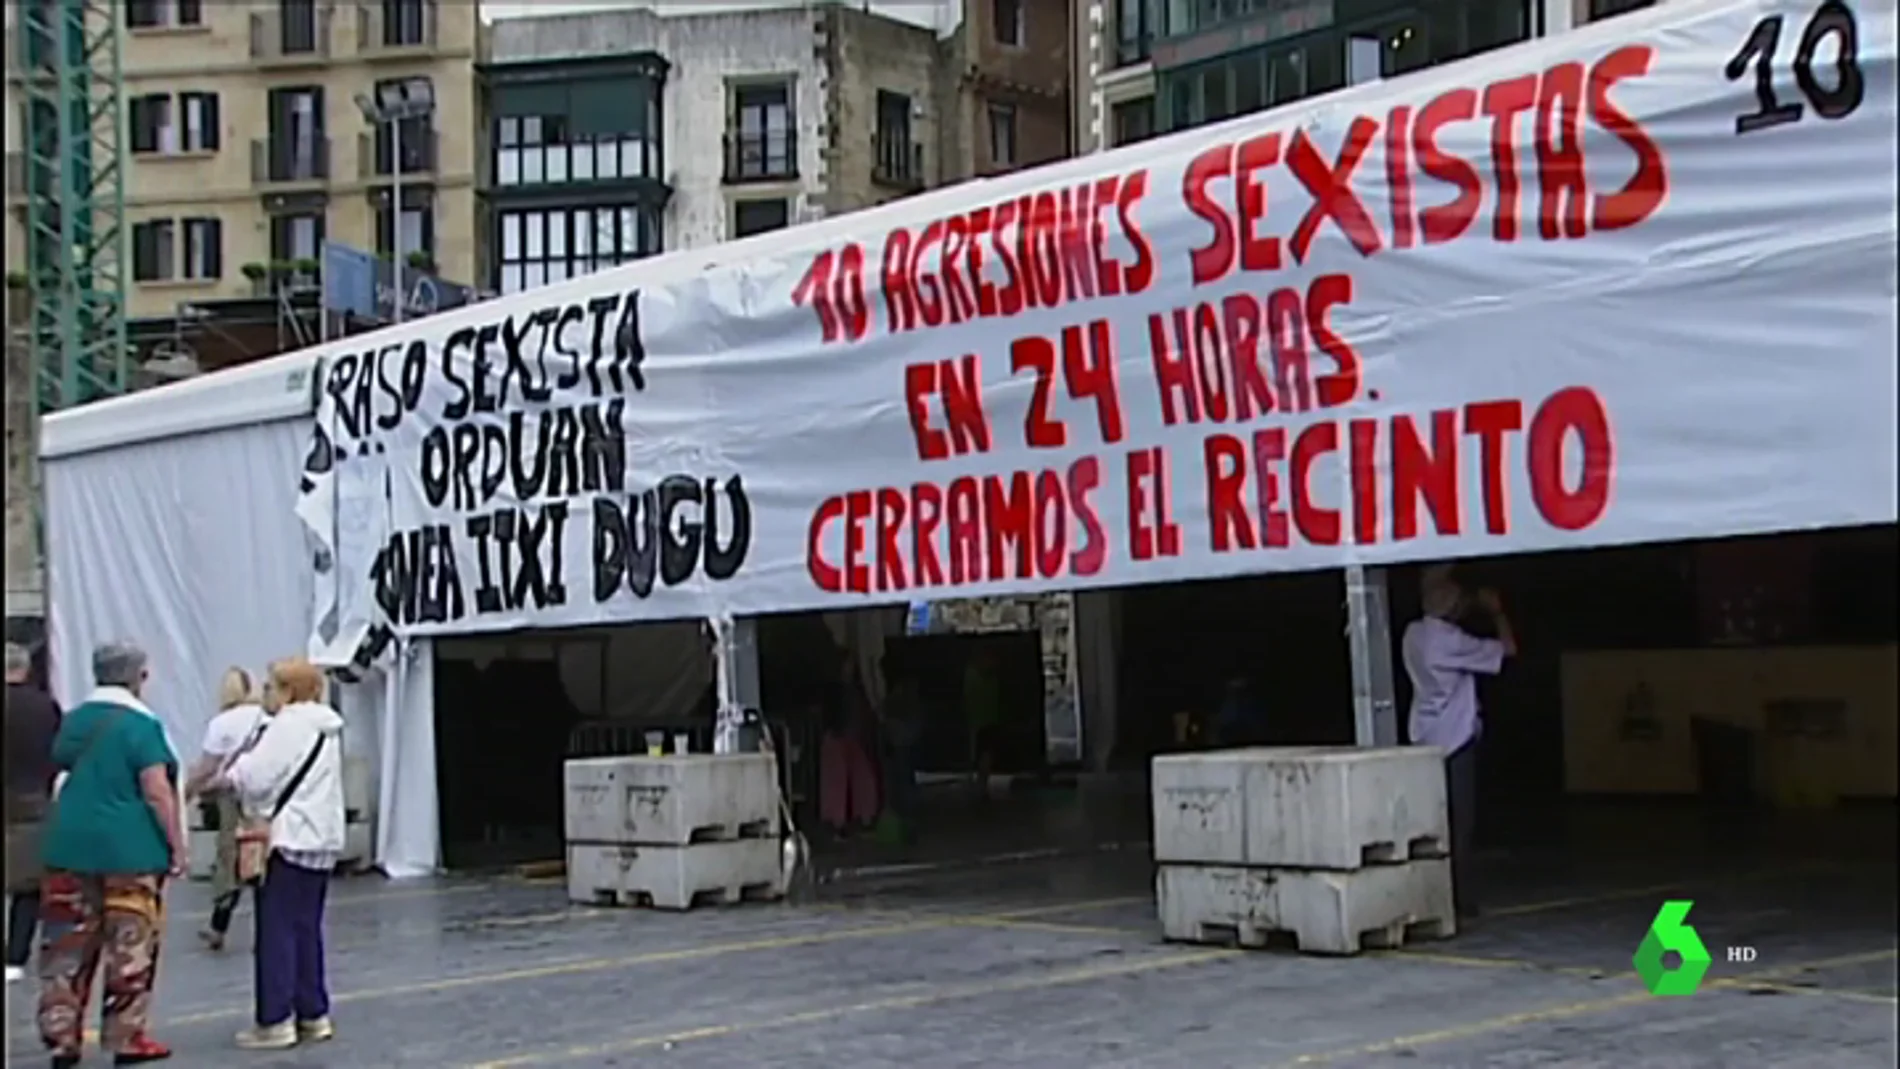 Convocan manifestaciones en San Sebastián y Bilbao contra las agresiones machistas